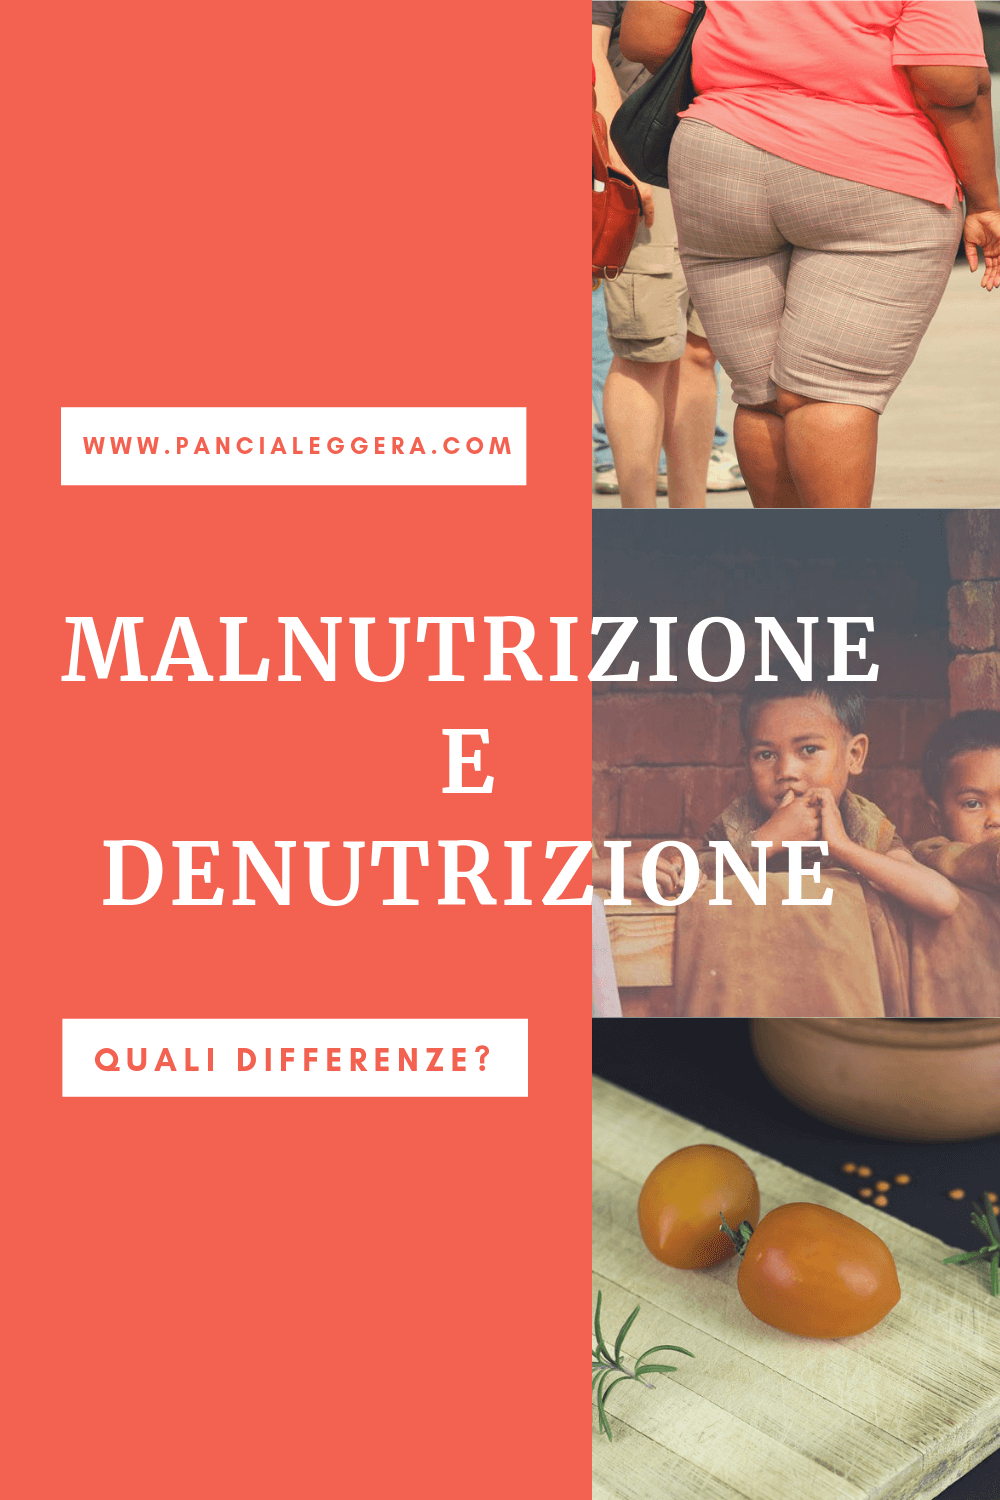 Malnutrizione e Denutrizione differenze